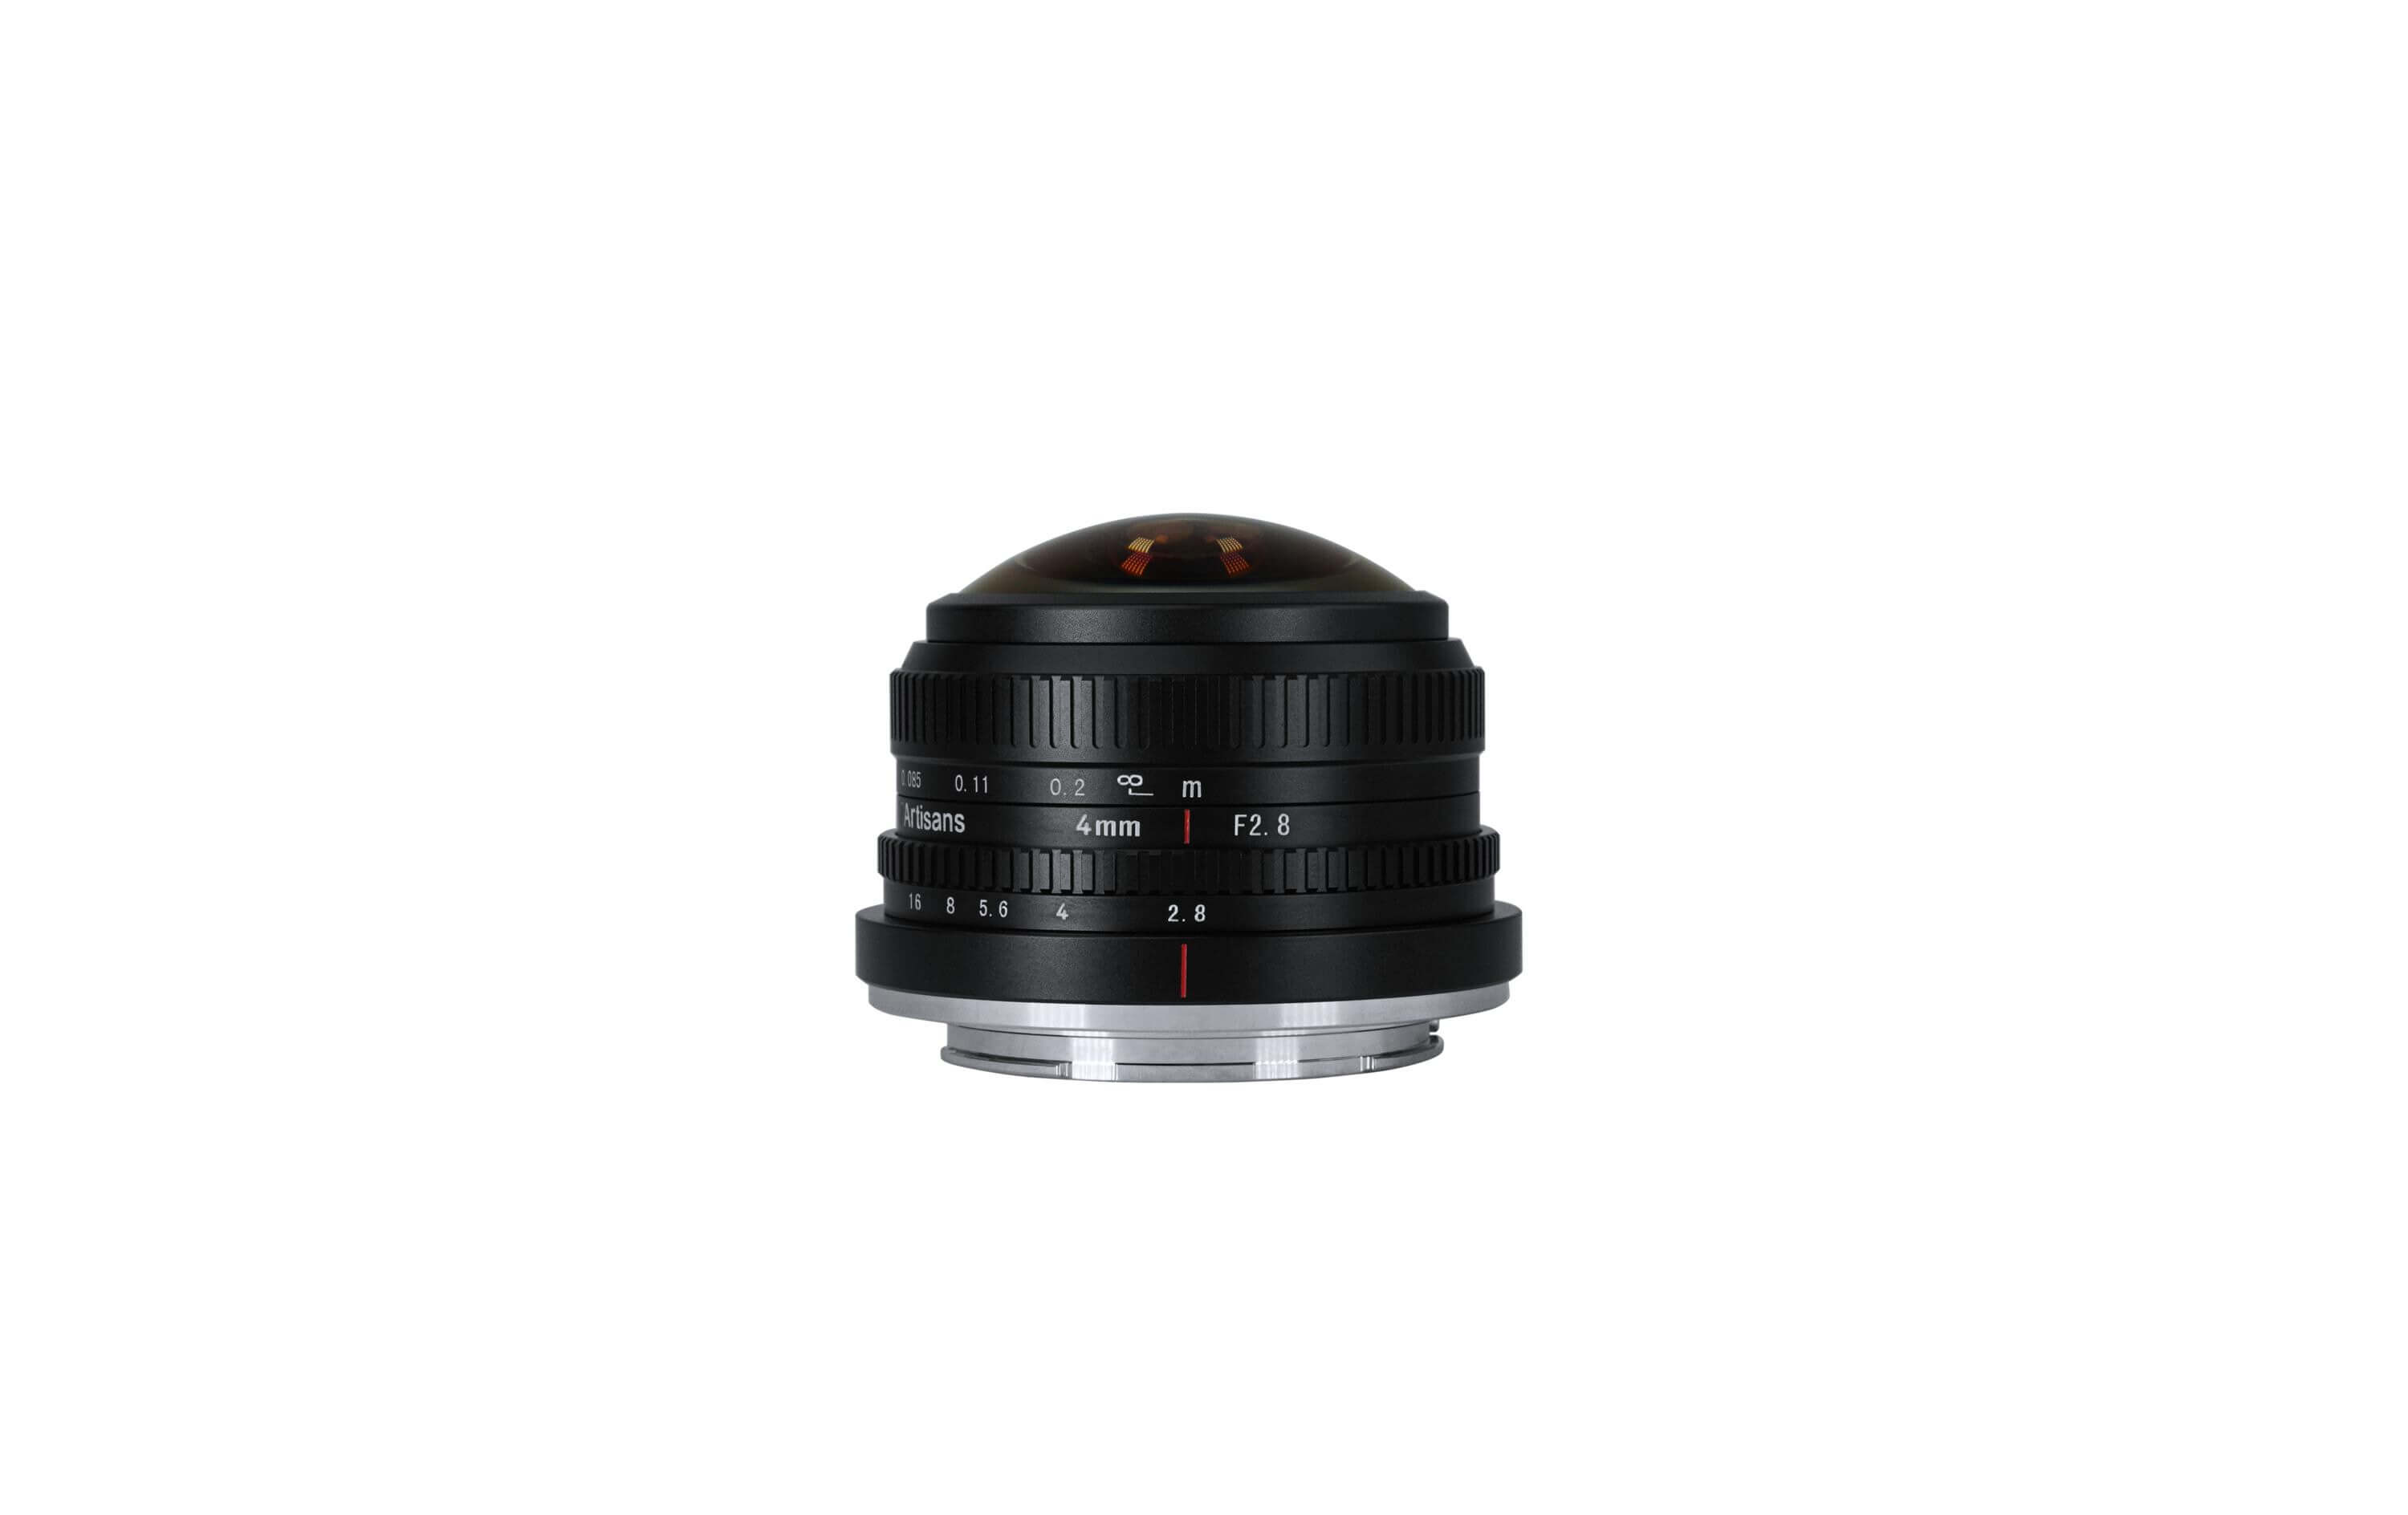 7Artisans Longueur focale fixe 4mm F/2 8 Fisheye – Sony E Mount